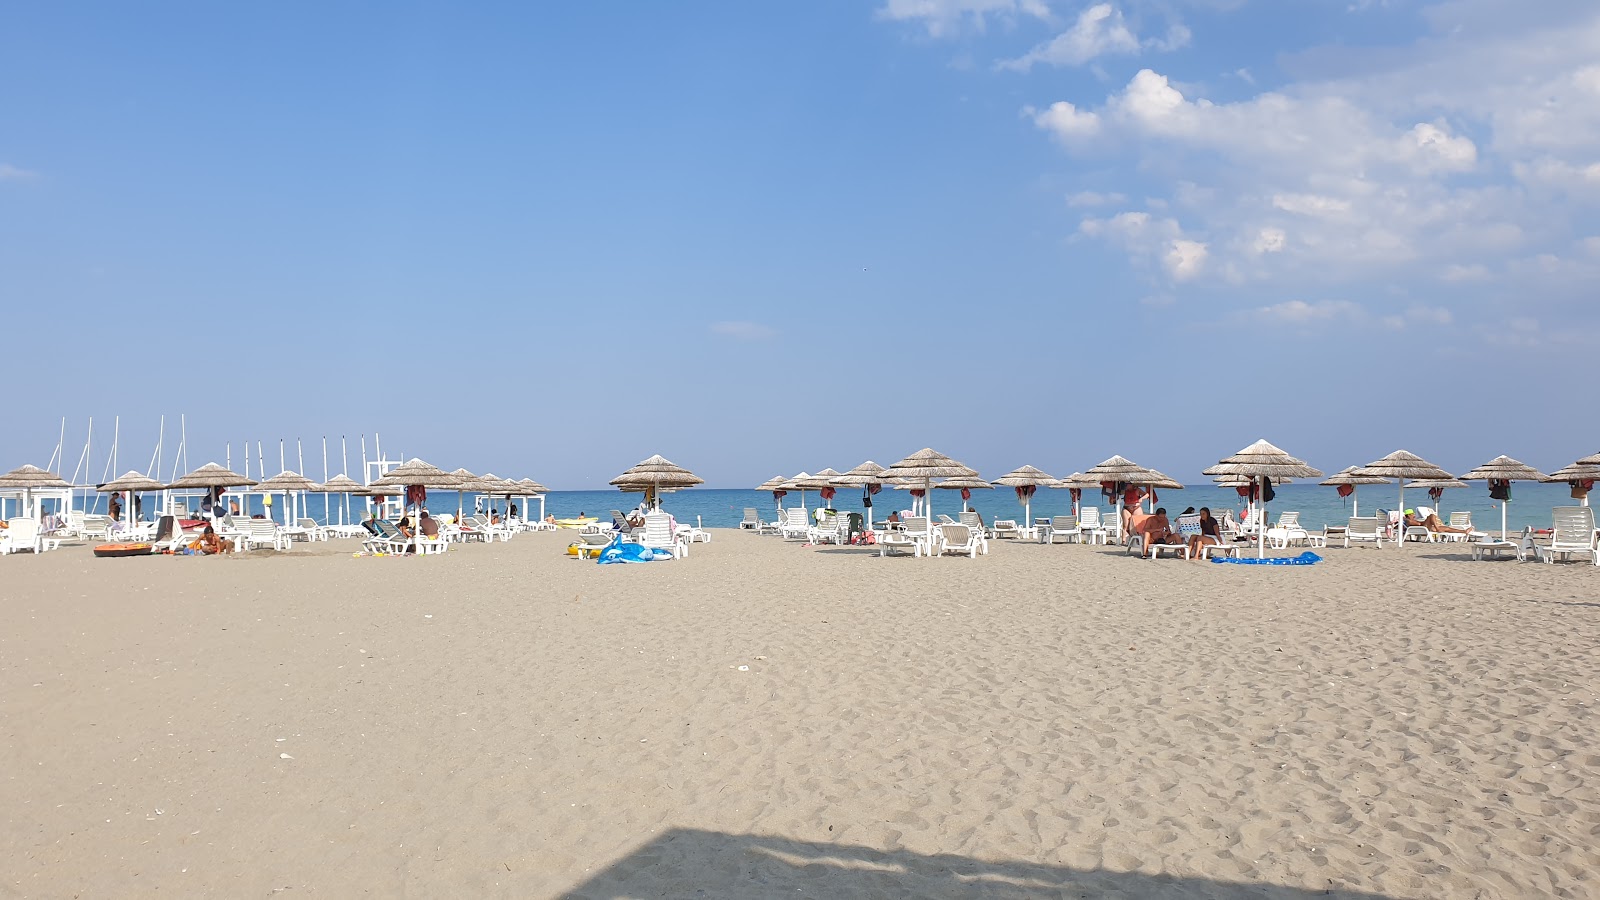 Foto van Spiaggia di Policoro met hoog niveau van netheid